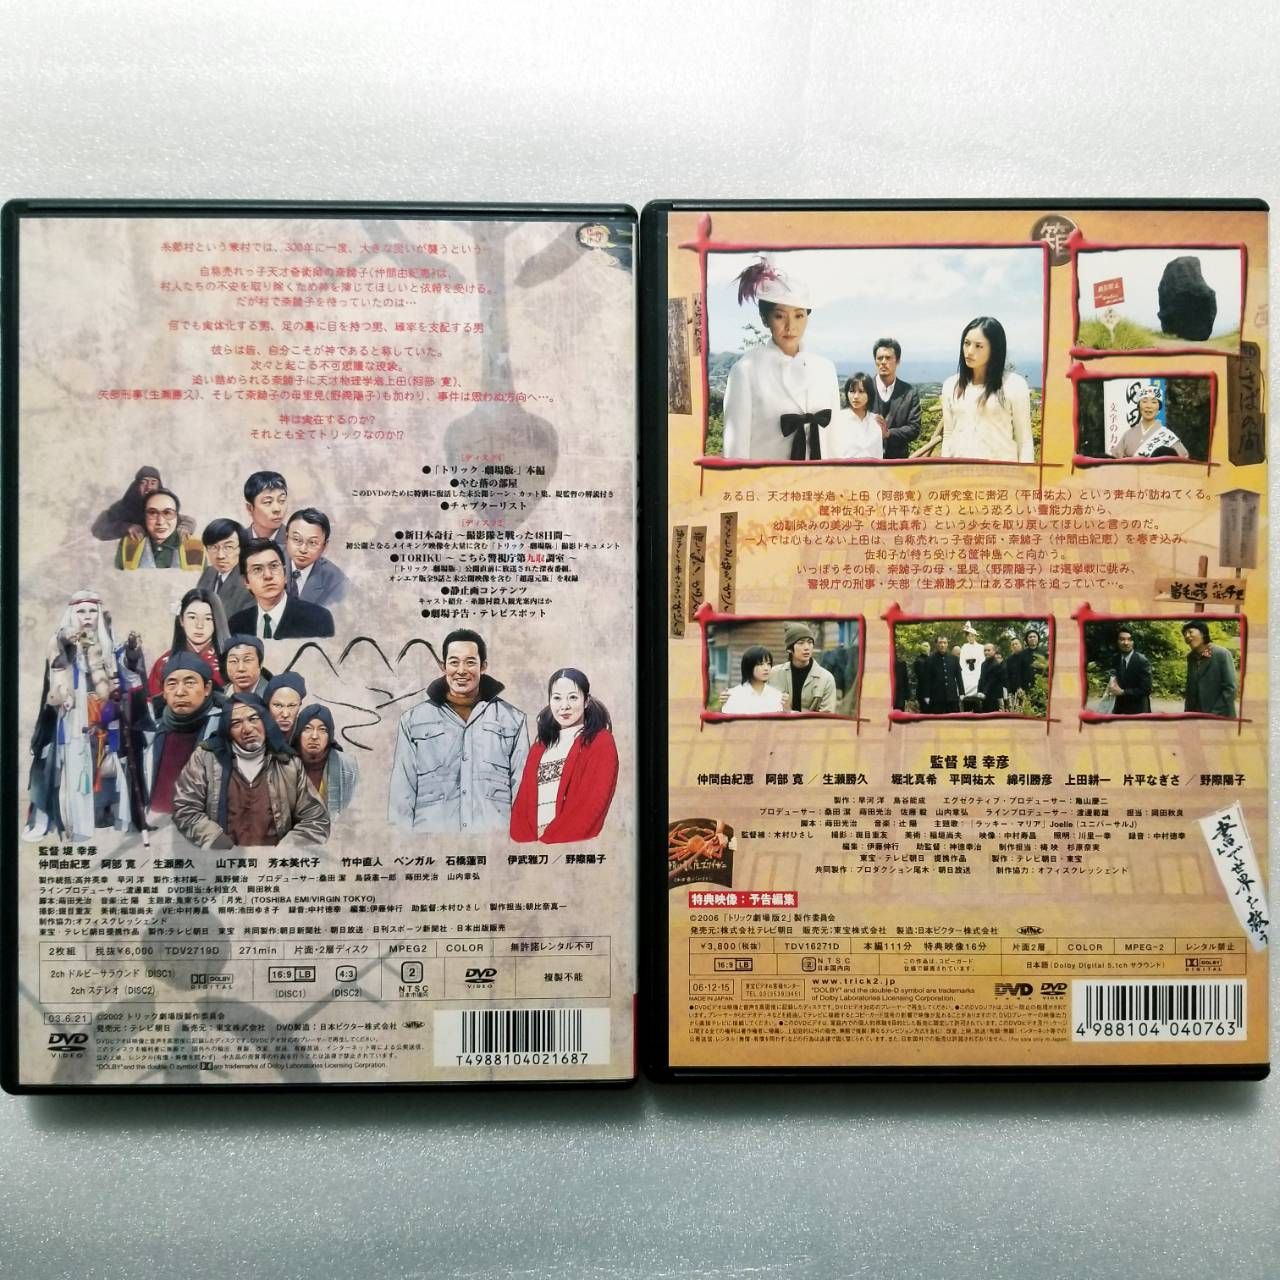 TRICK+TRICK2+劇場版 DVDセット